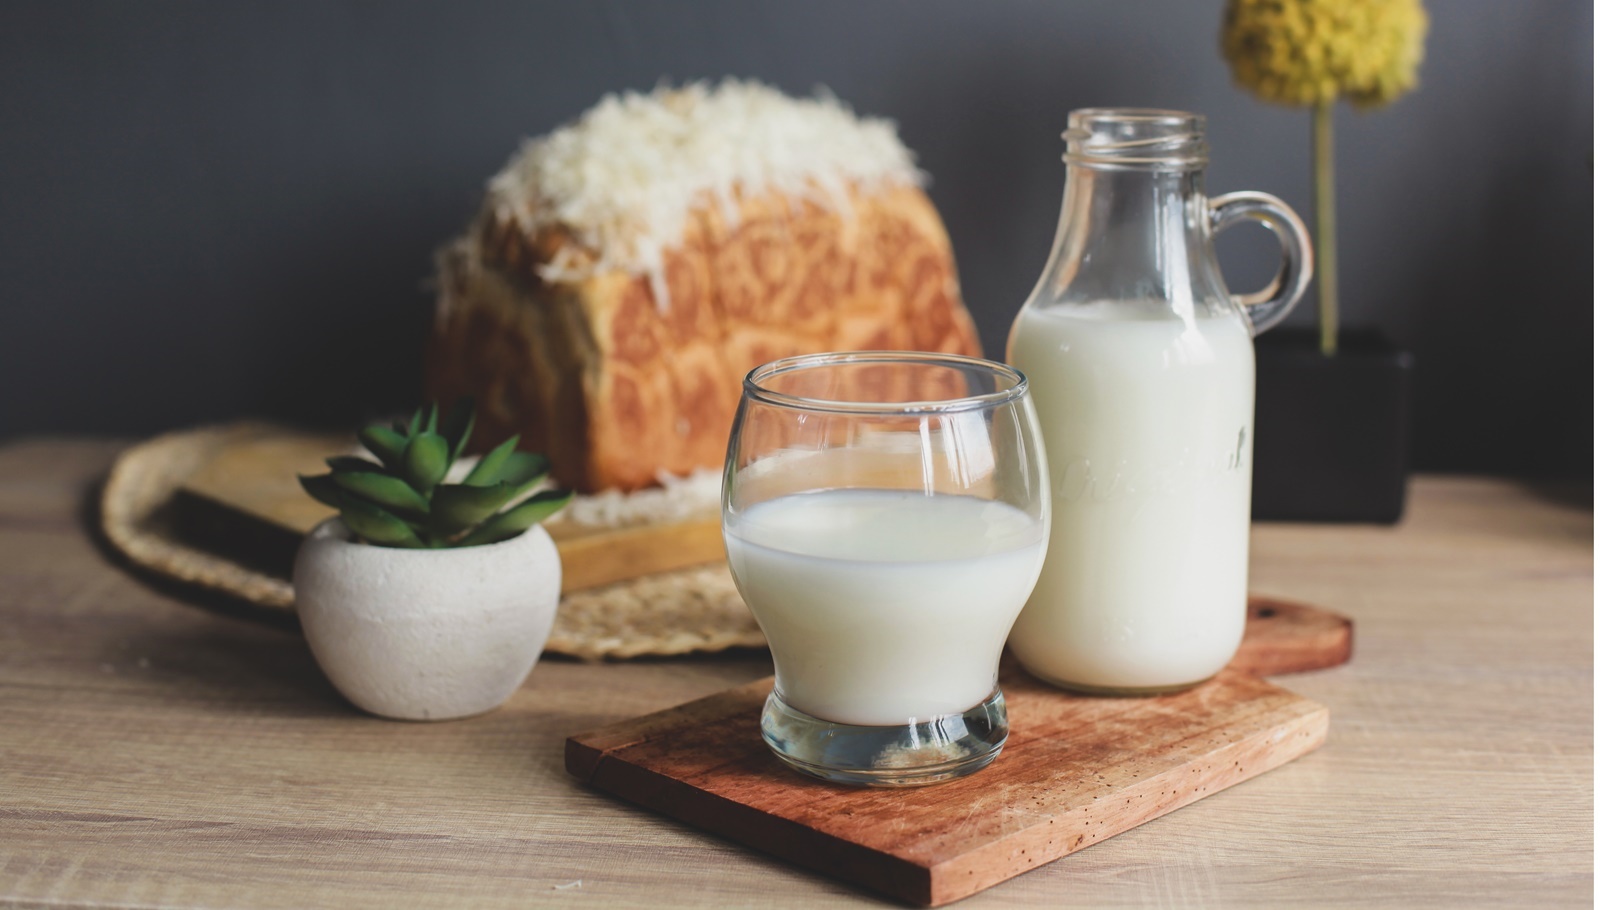 milk-and-bread-2021-08-30-17-21-10-utc